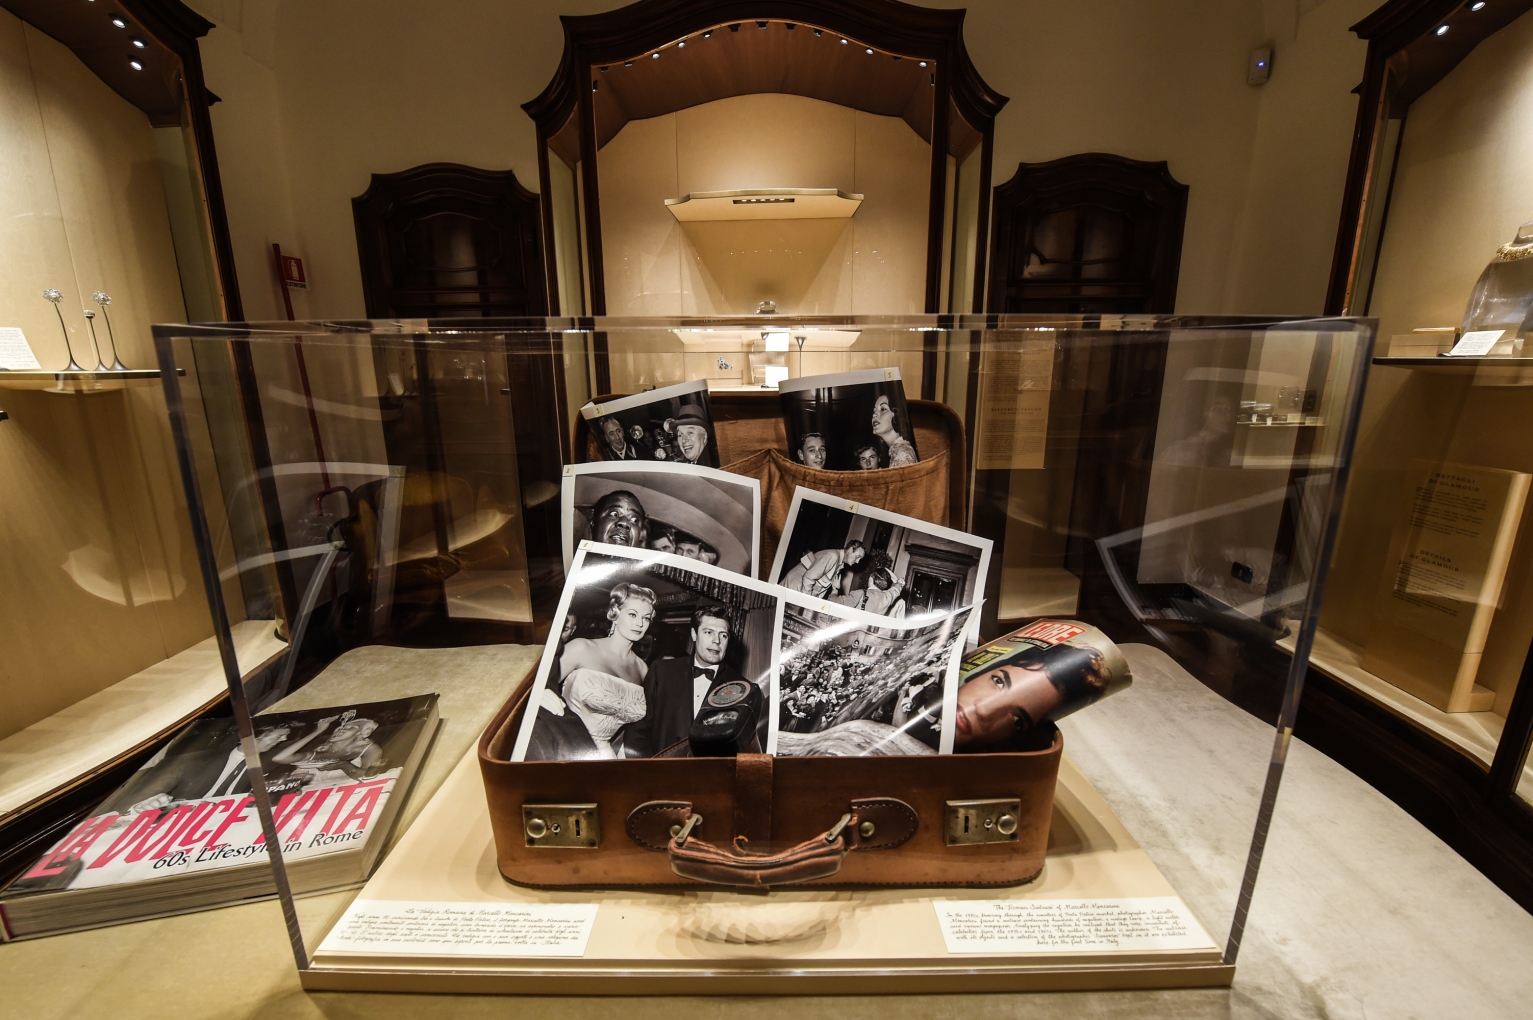 Tiffany & Co store shop window showcase Via Condotti Rome Italy